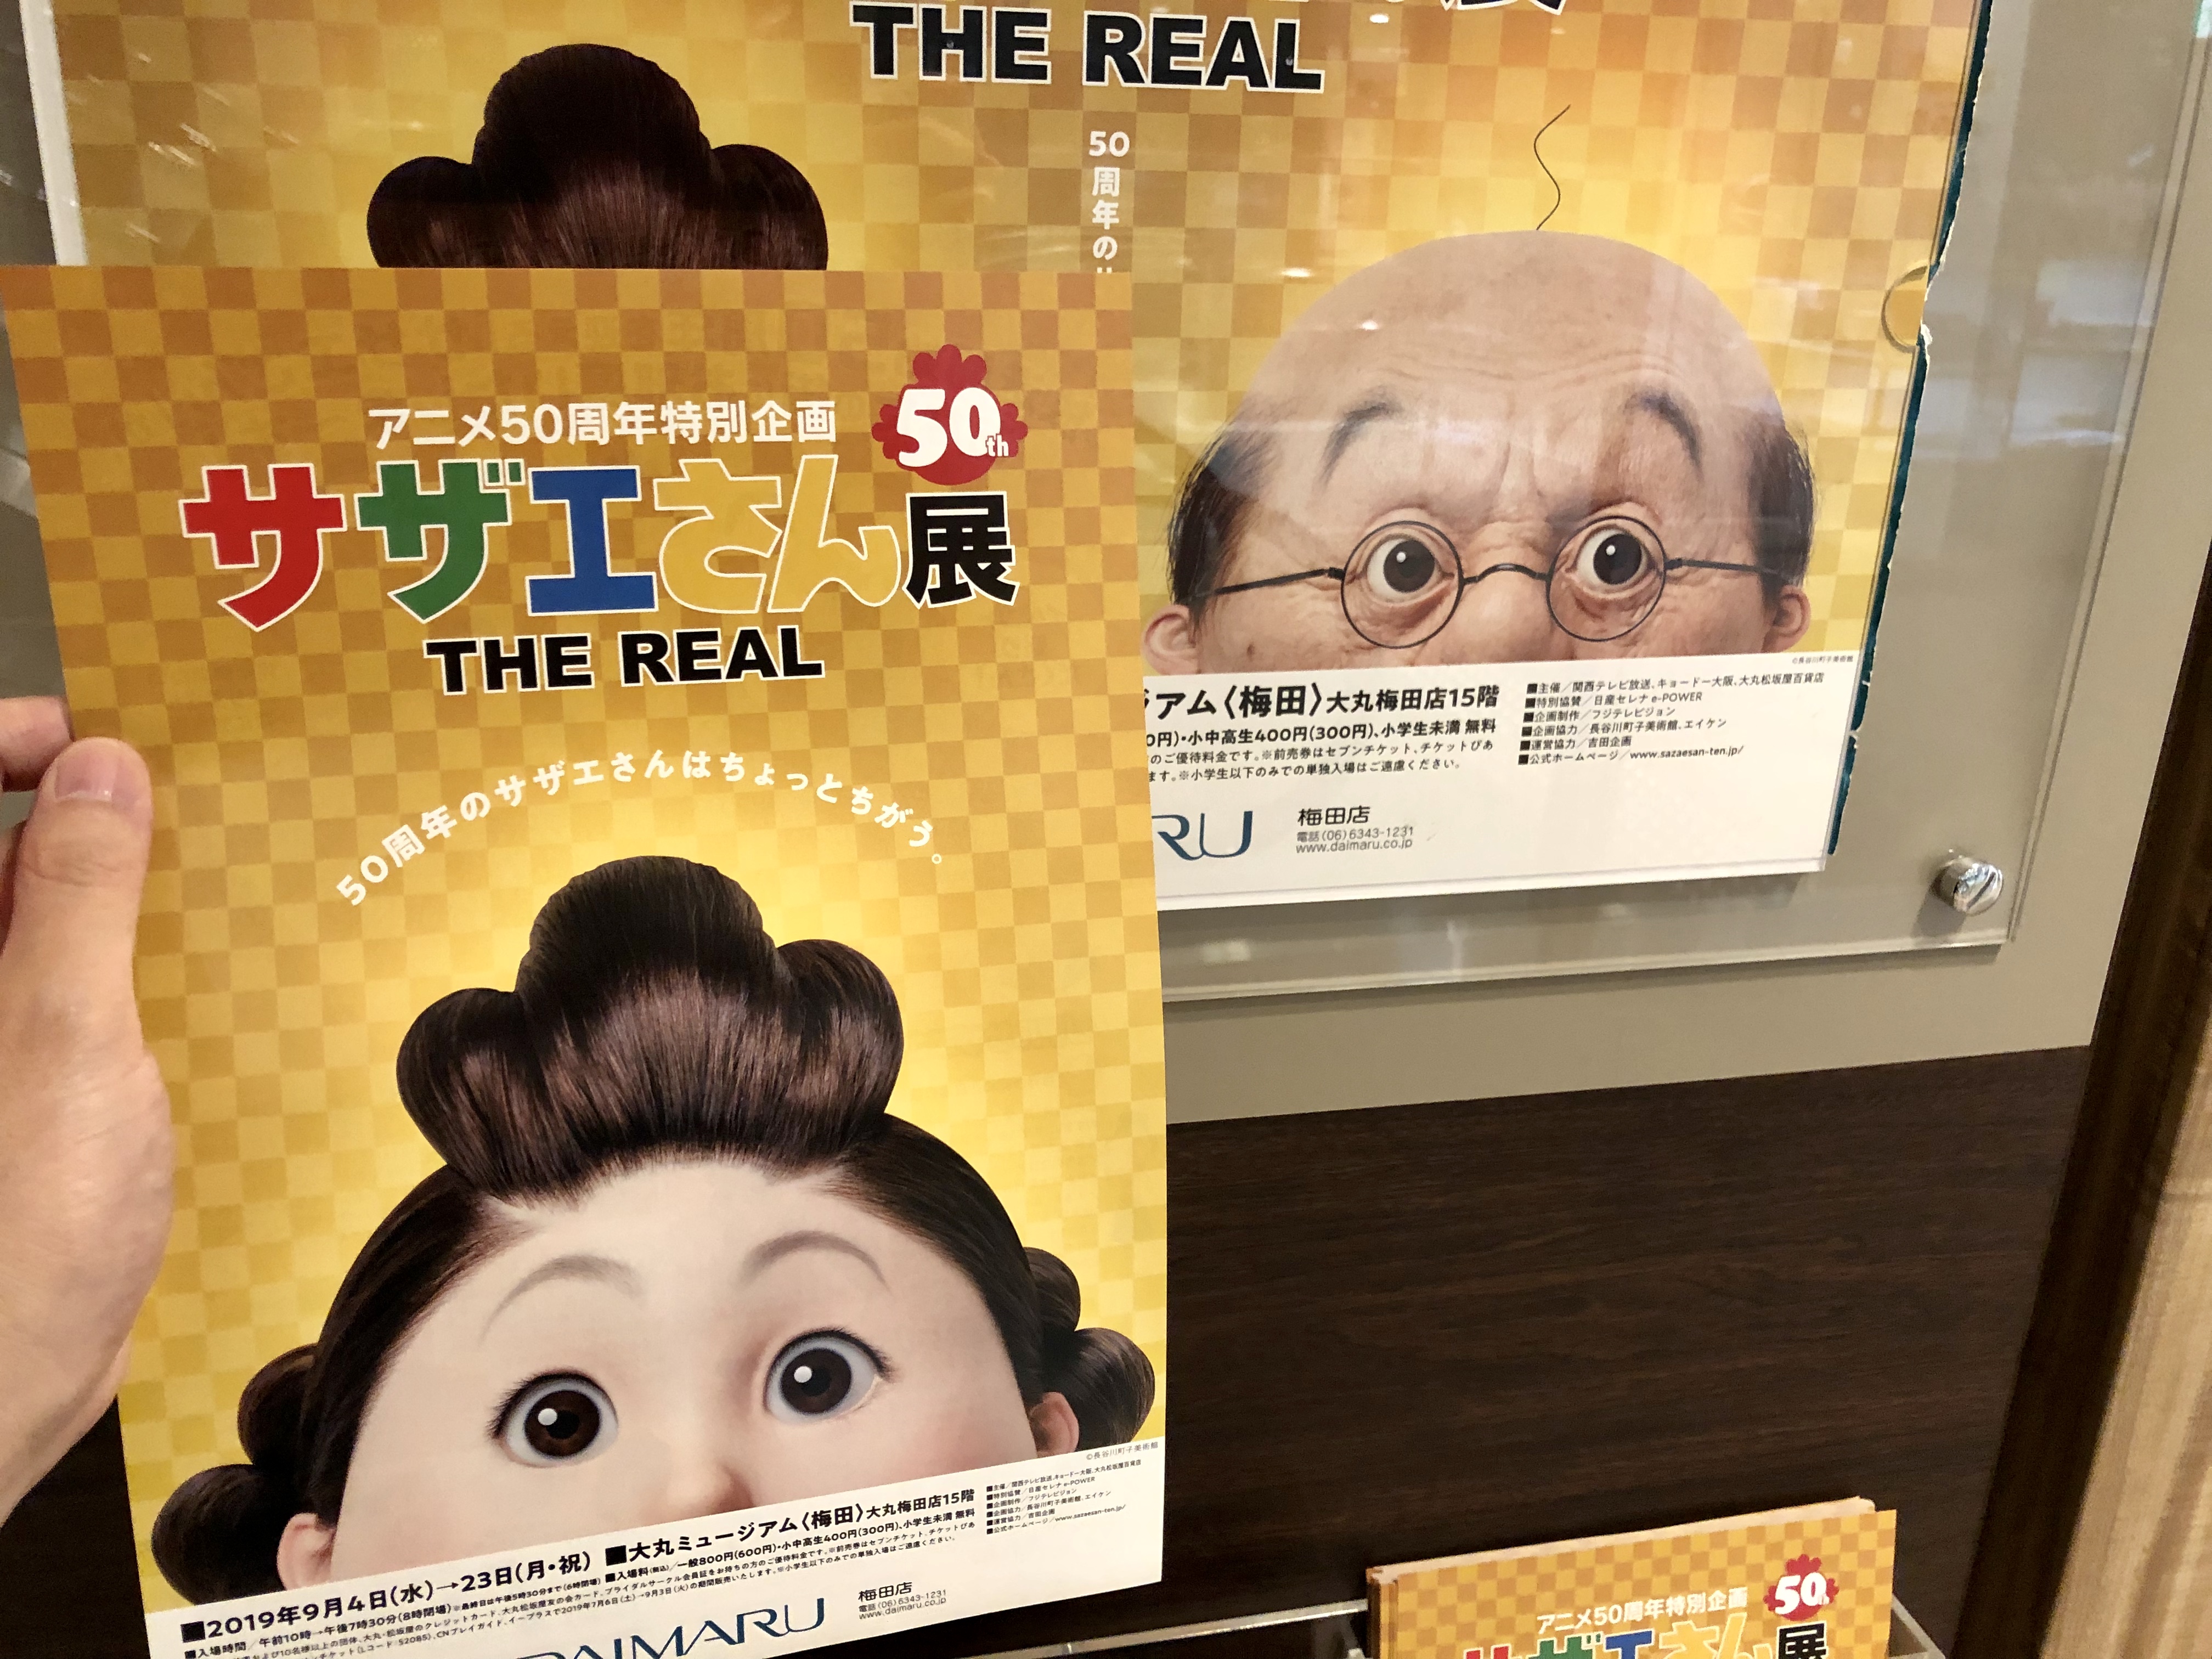 アニメ放送50周年記念 サザエさん展 The Real が梅田大丸で開催